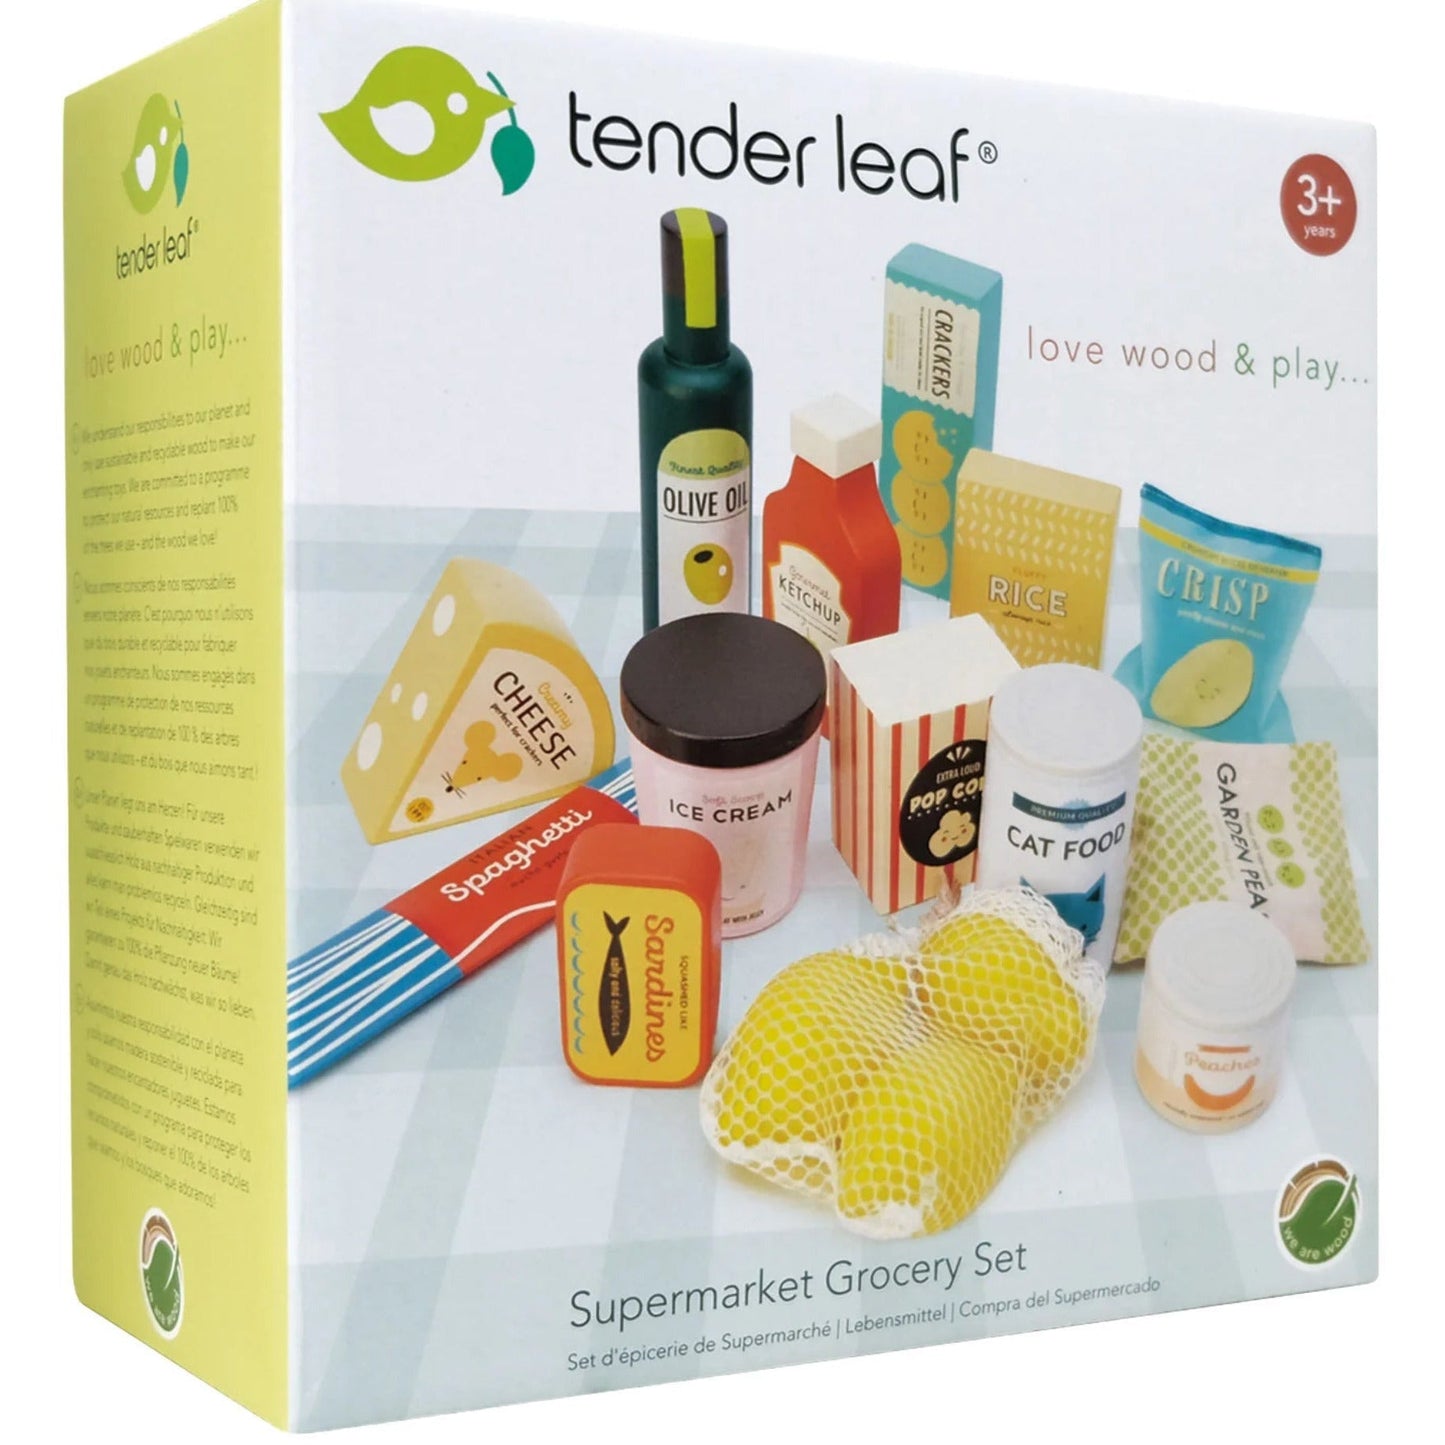 Tender leaf toys -Supermarket Grocery Set